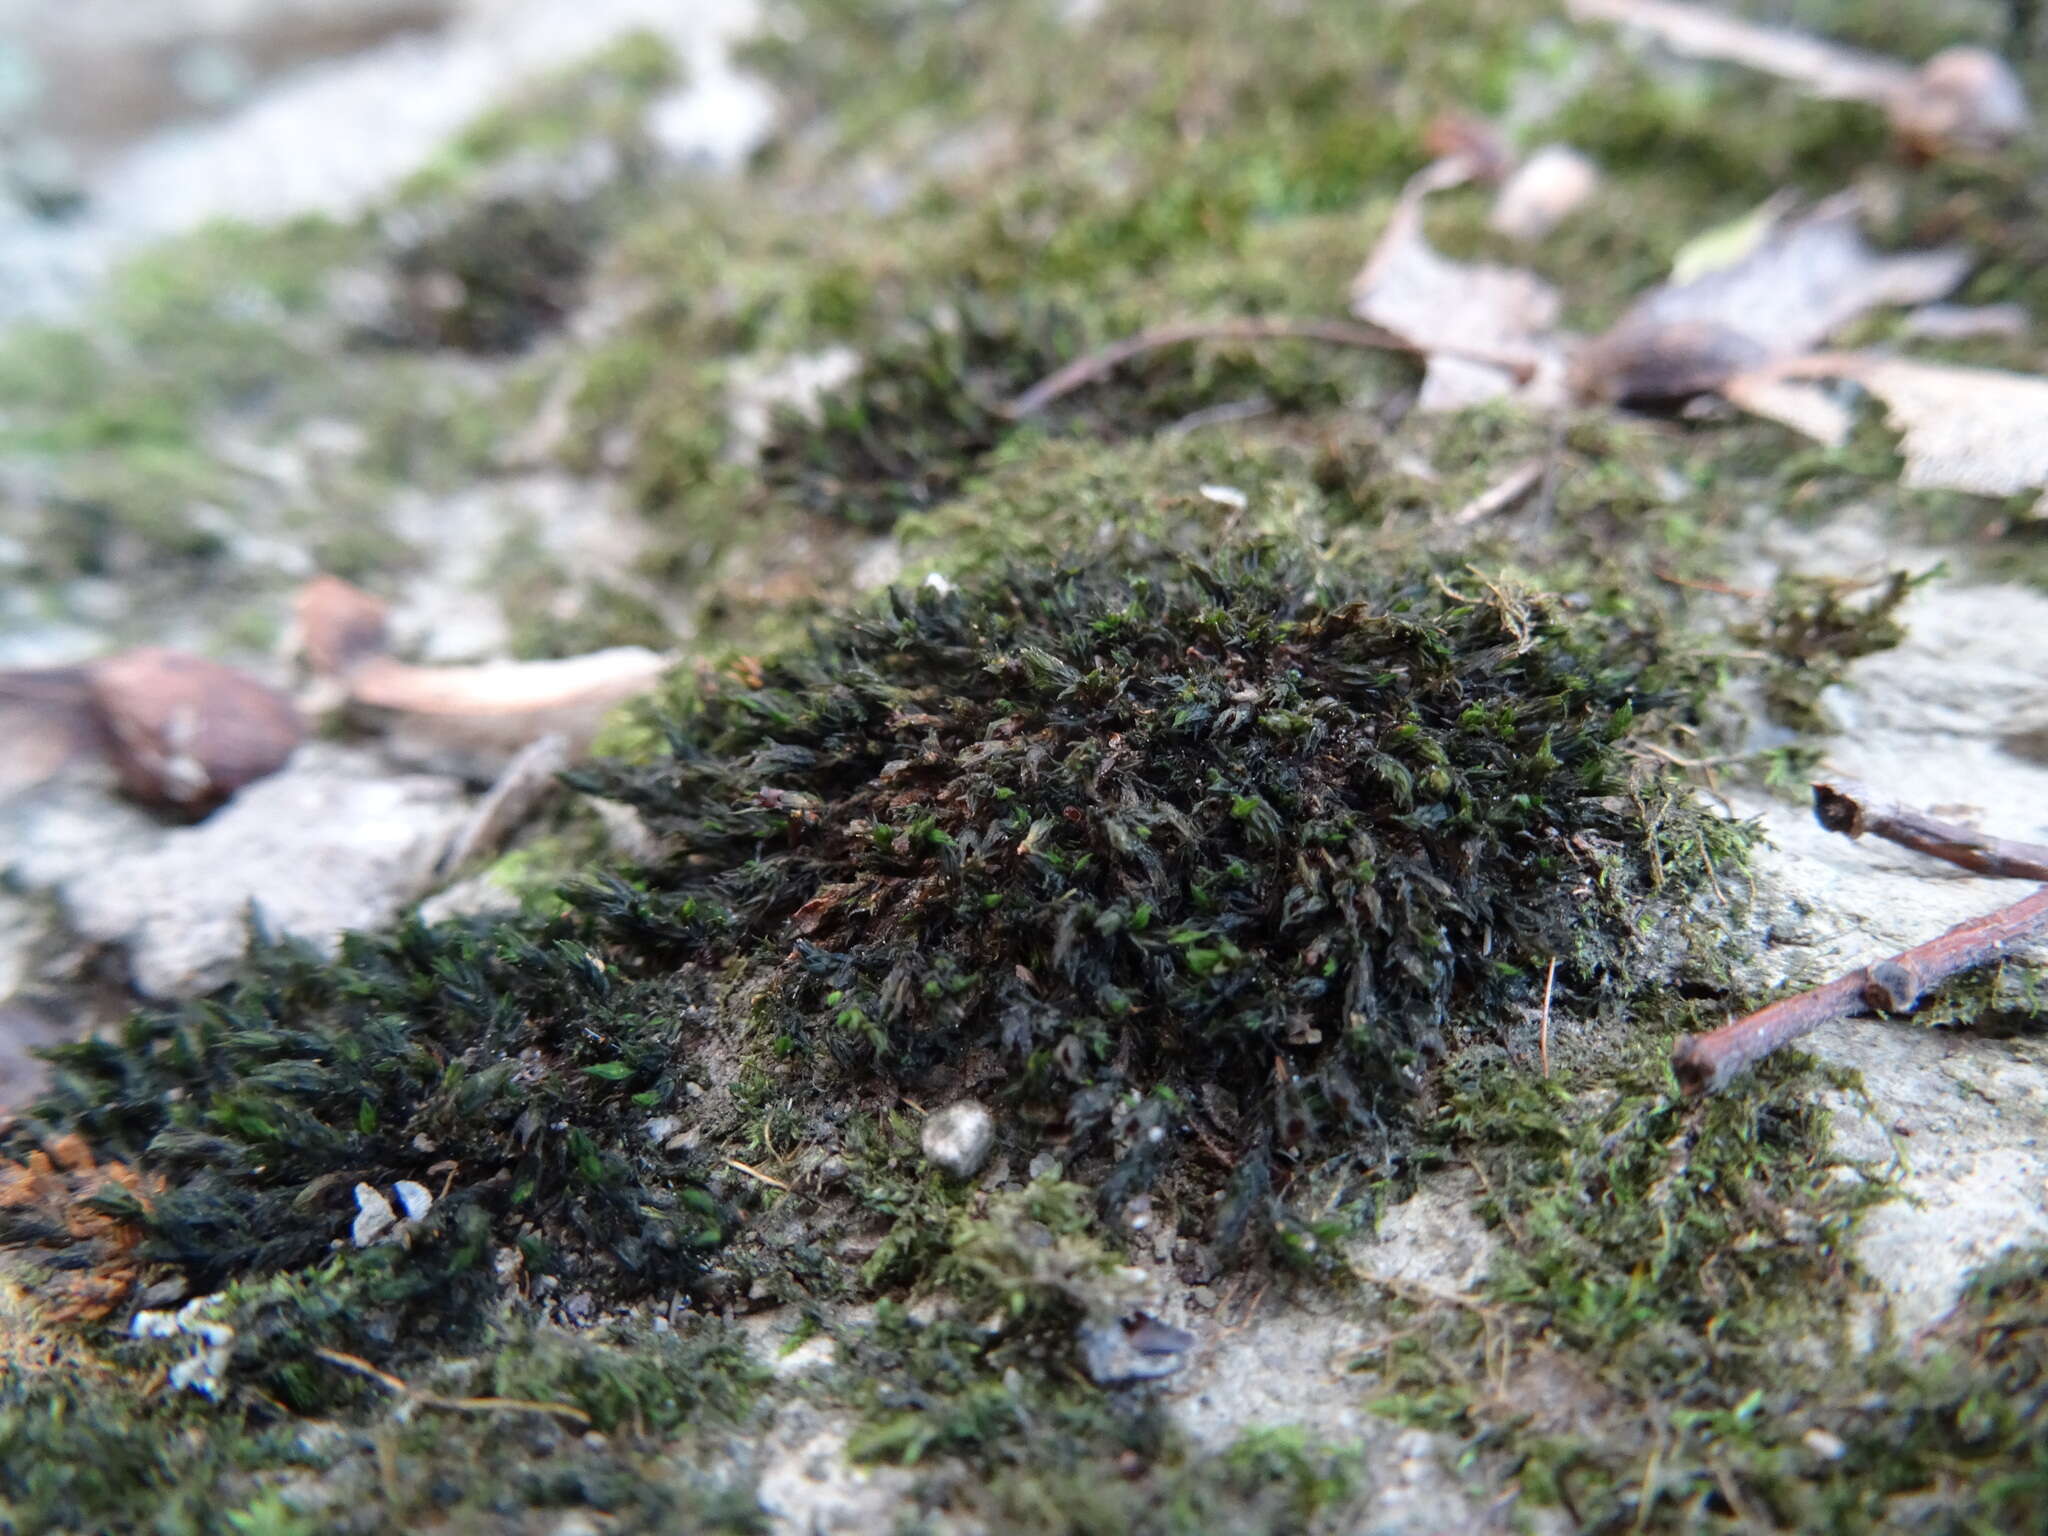 Image of streamside schistidium moss